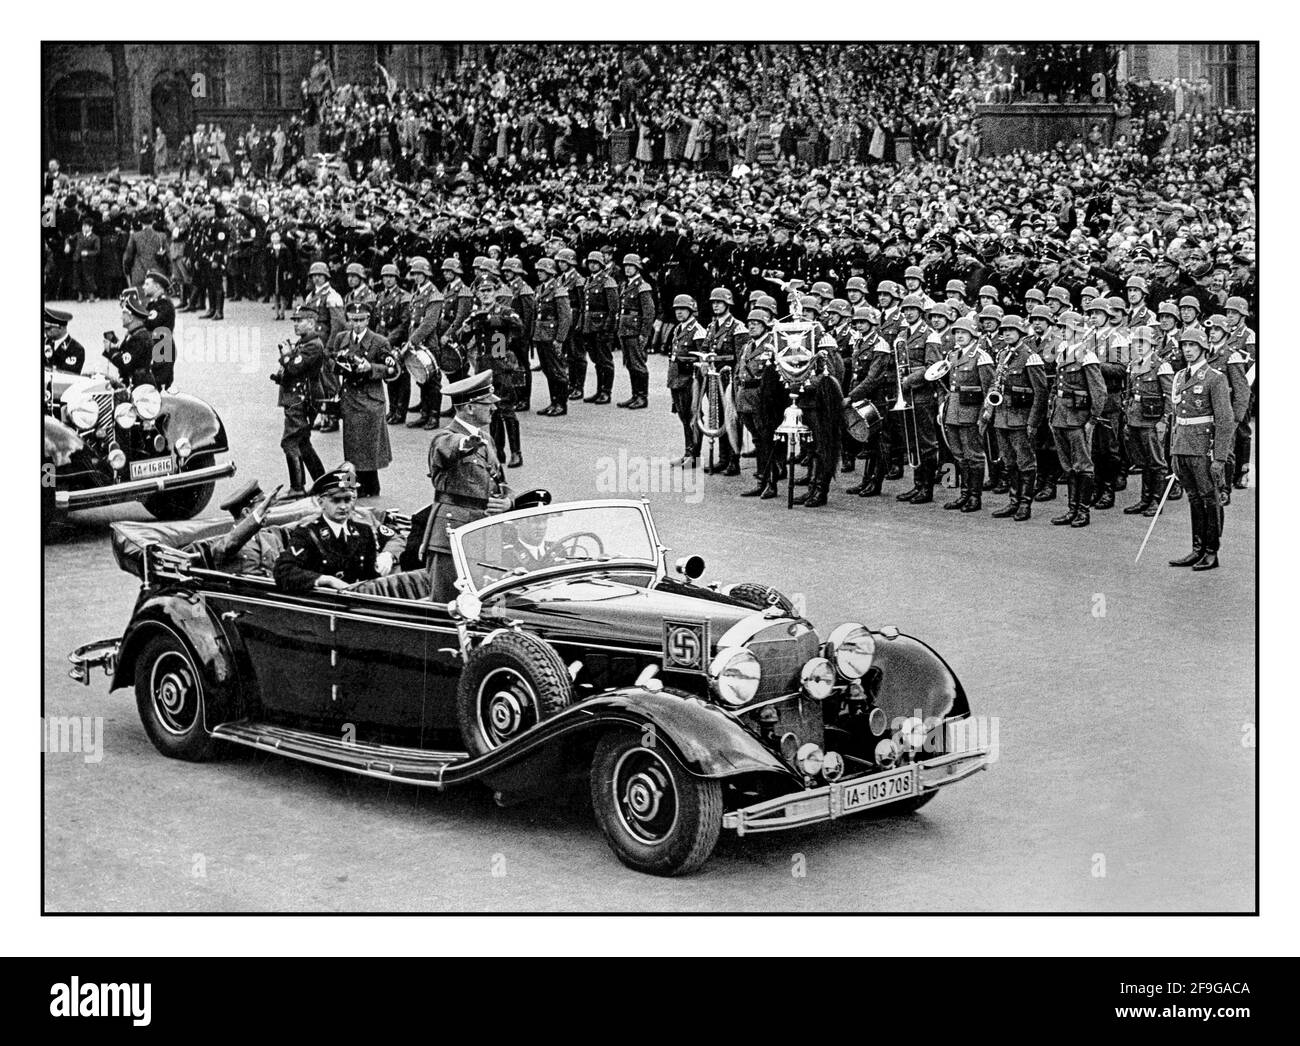 Adolf Hitler en uniforme, debout dans son automobile Mercedes haut de gamme officielle portant le brassard swastika donne à Heil Hitler un hommage à l'armée et à la foule lors d'un énorme rassemblement nazi en 1938 en Allemagne. Hitler salue les participants à un Reichsparteitag (Reich Party Day) à Nuremberg, en Allemagne. Un Martin Bormann en uniforme et le Dr Goebbels sont également présents, assis à l'arrière de la Mercedes car à toit ouvert Banque D'Images